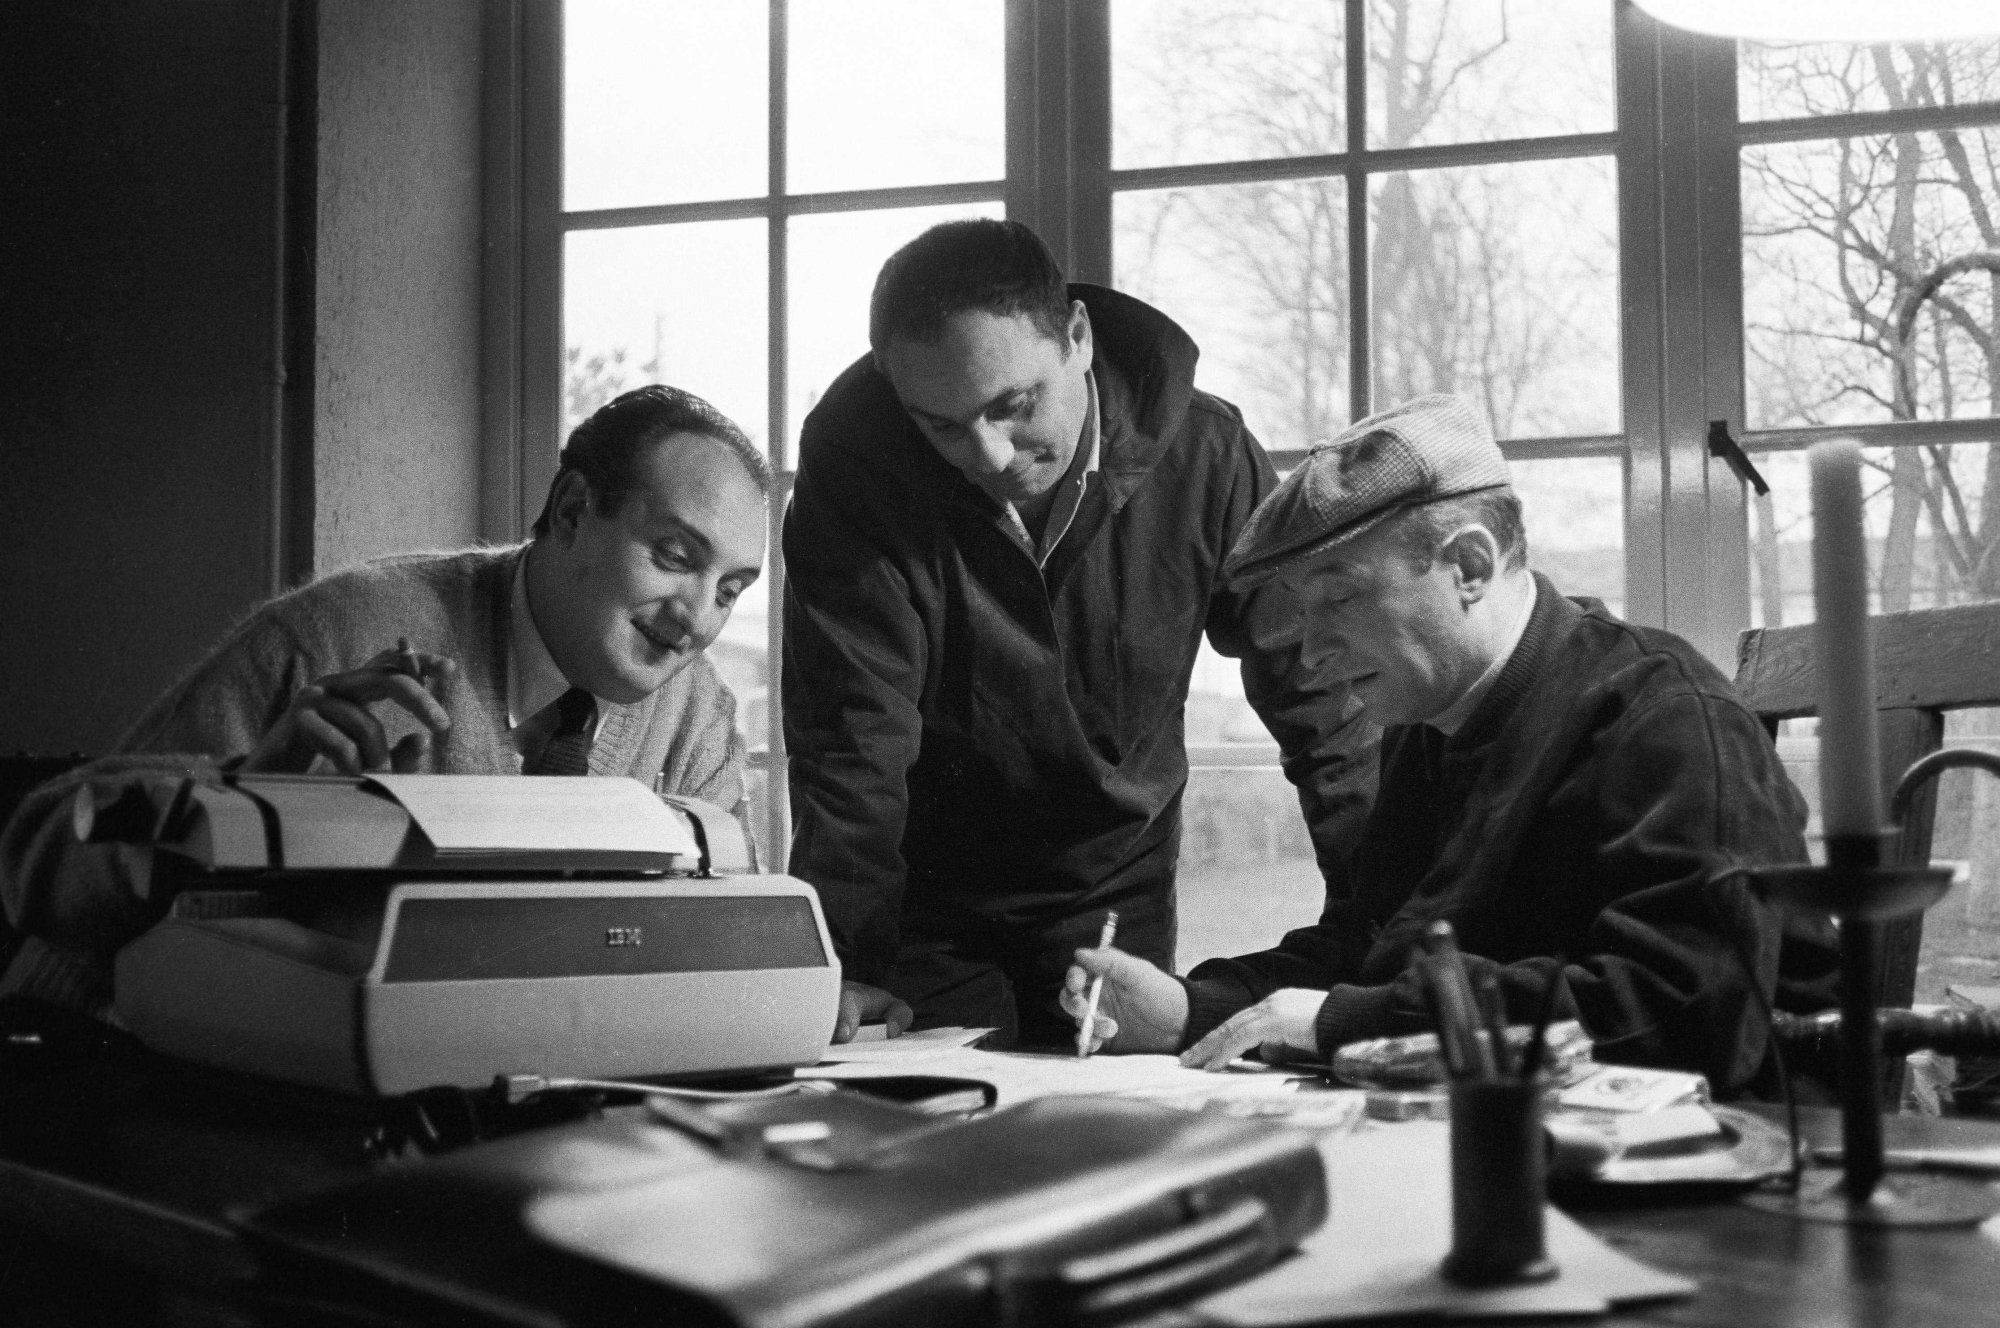 De gauche à droite : Pierre Tchernia, Marcel Bluwal et Michel Audiard travaillent chez Audiard à Paris, le 20 mars 1962.